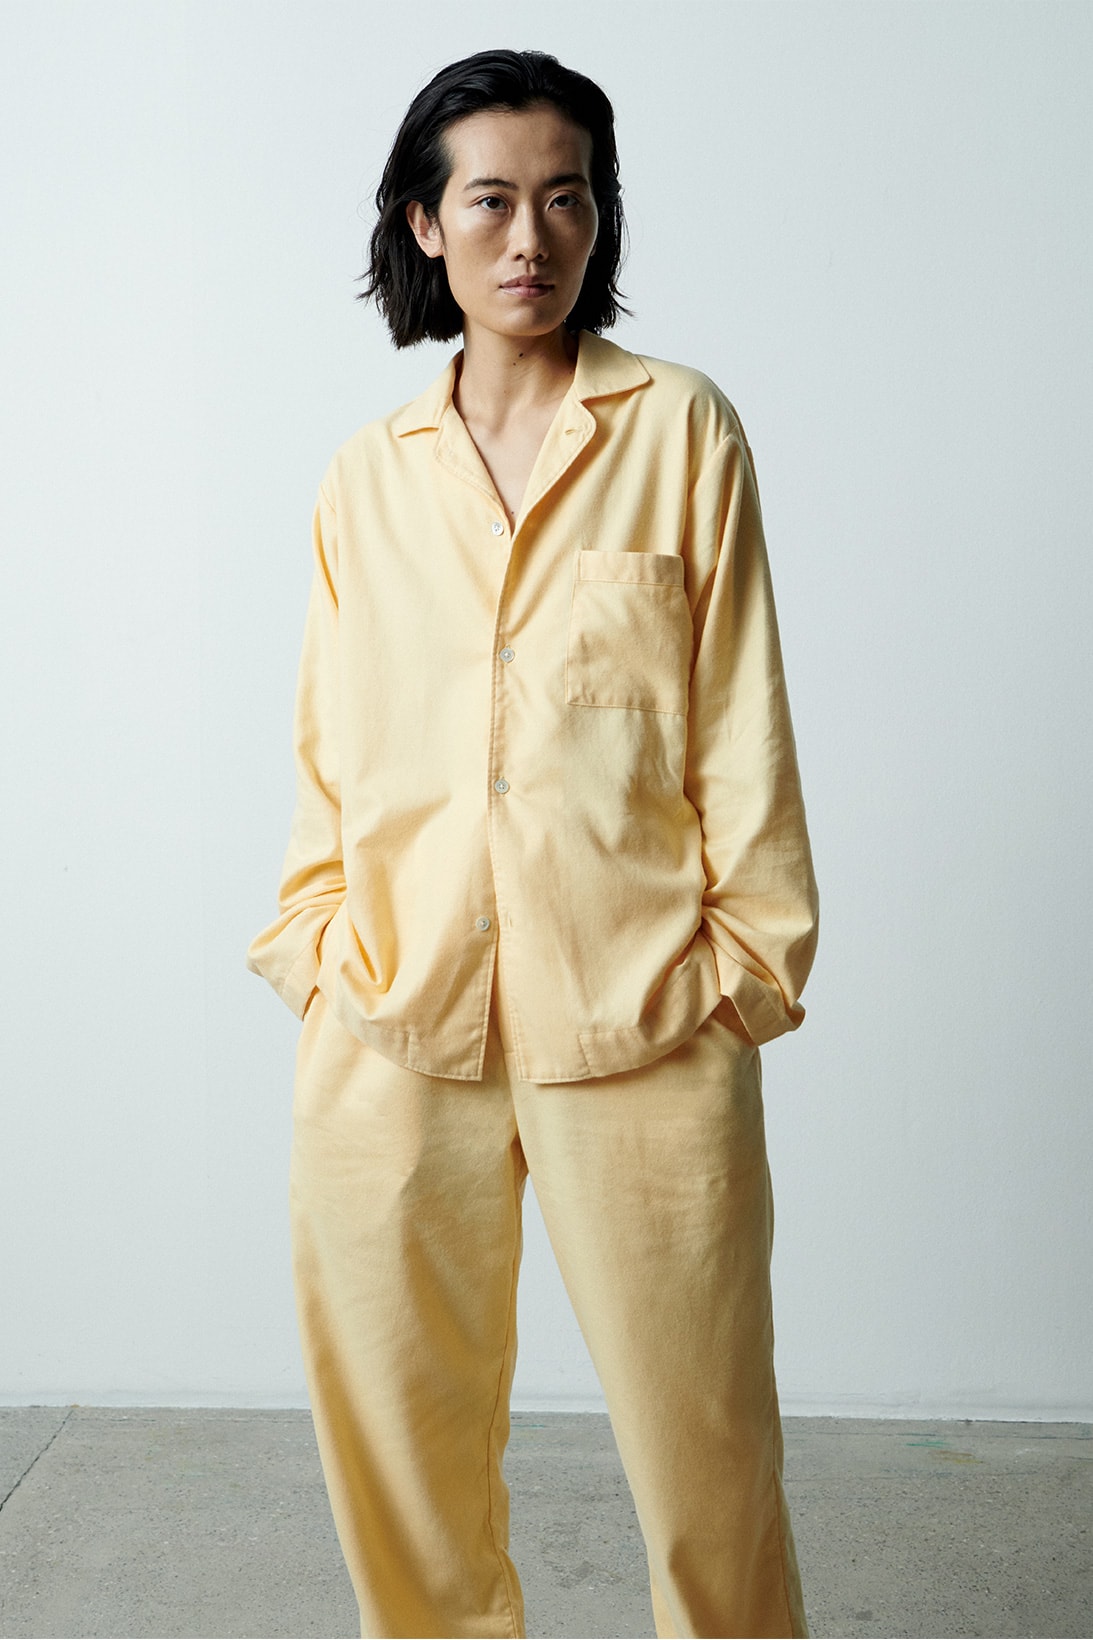 tekla flannel pajamas sleepwear loungewear unisex fall winter grape lucid black gentle yellow cream white release info